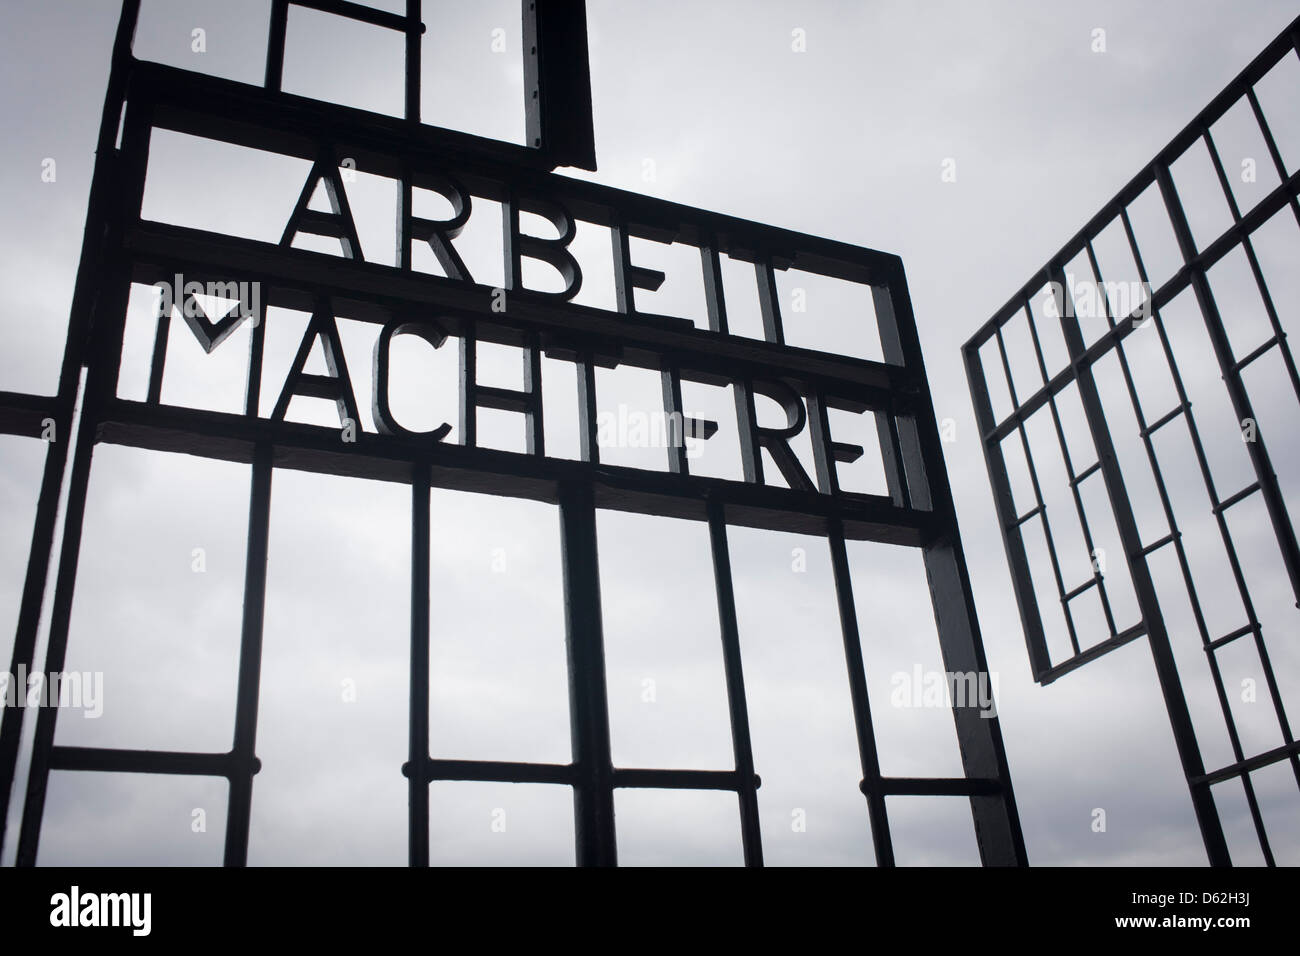 La célèbre moto de camps d'extermination et du travail allemand Arbeit macht frei ('Work vous rendra libres") dans le nazisme et du camp de concentration de Sachsenhausen soviétique PENDANT LA SECONDE GUERRE MONDIALE, maintenant connu sous le nom de Mémorial et musée de Sachsenhausen. Sachsenhausen était un camp de concentration Nazi à Oranienburg, à 35 kilomètres (22 miles) au nord de Berlin, Allemagne, utilisée principalement pour les prisonniers politiques de 1936 à la fin du Troisième Reich en mai 1945. (Plus de légende dans la description). Banque D'Images